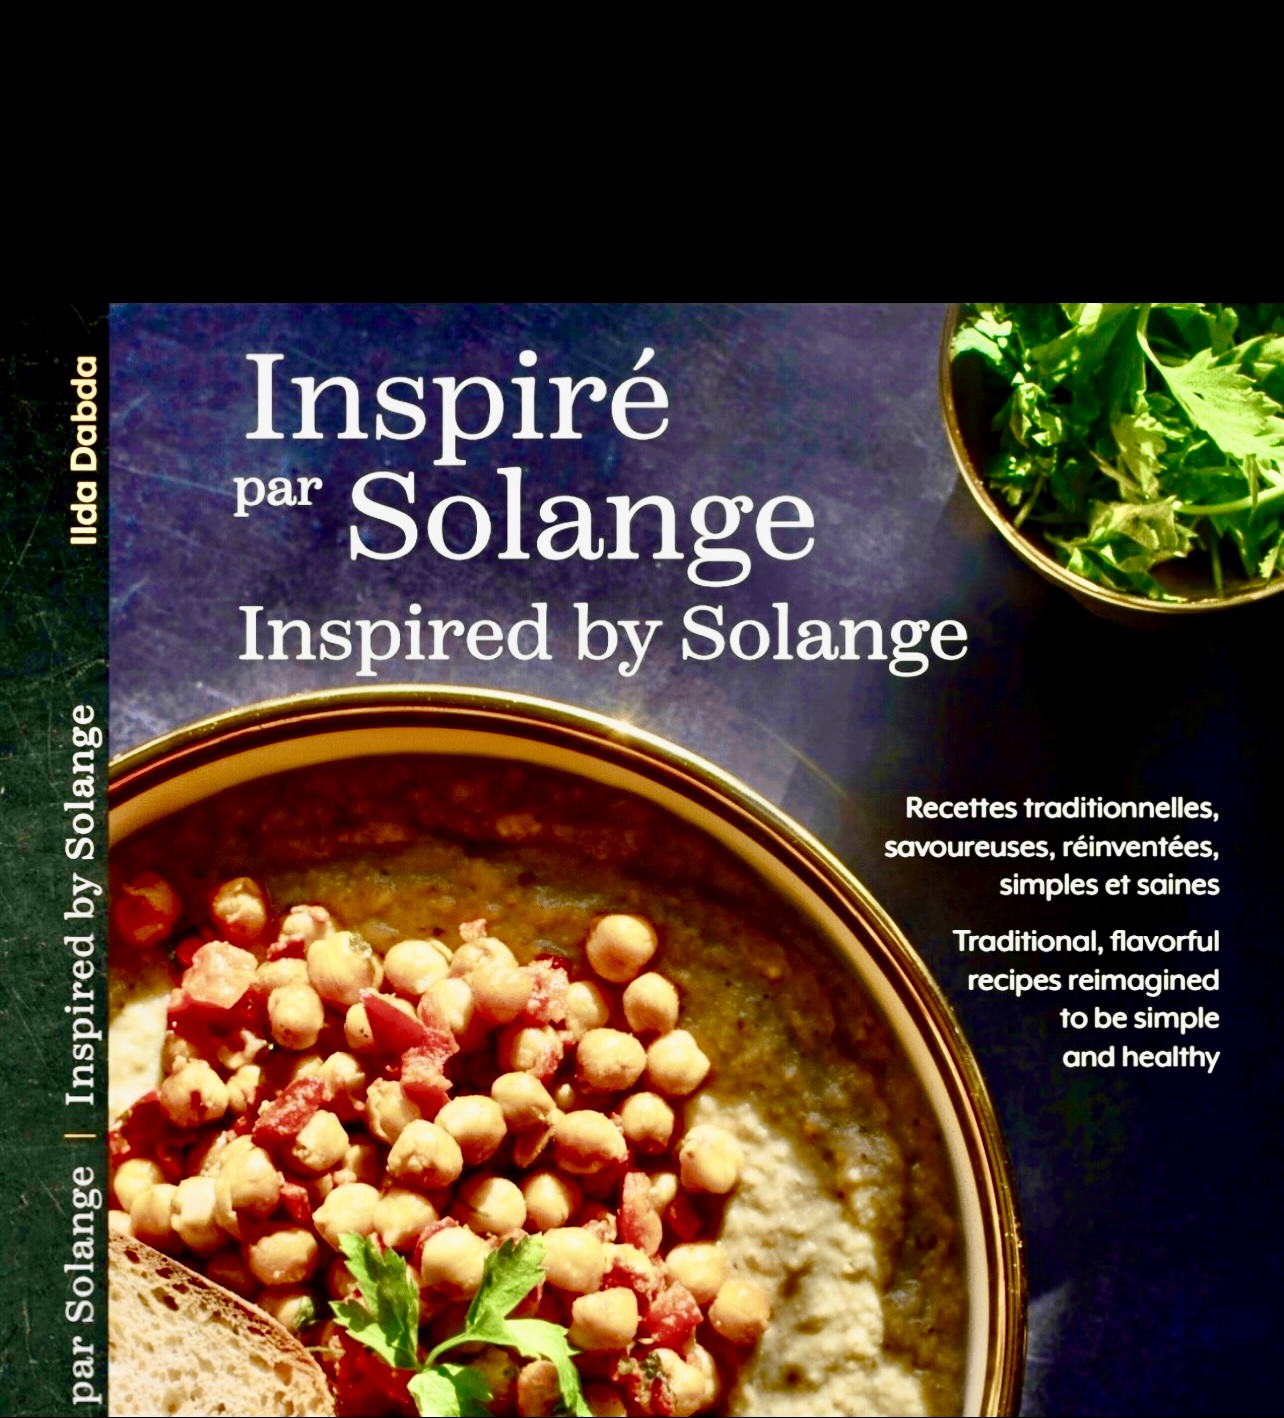 Un livre de recettes inspiré par Solange.